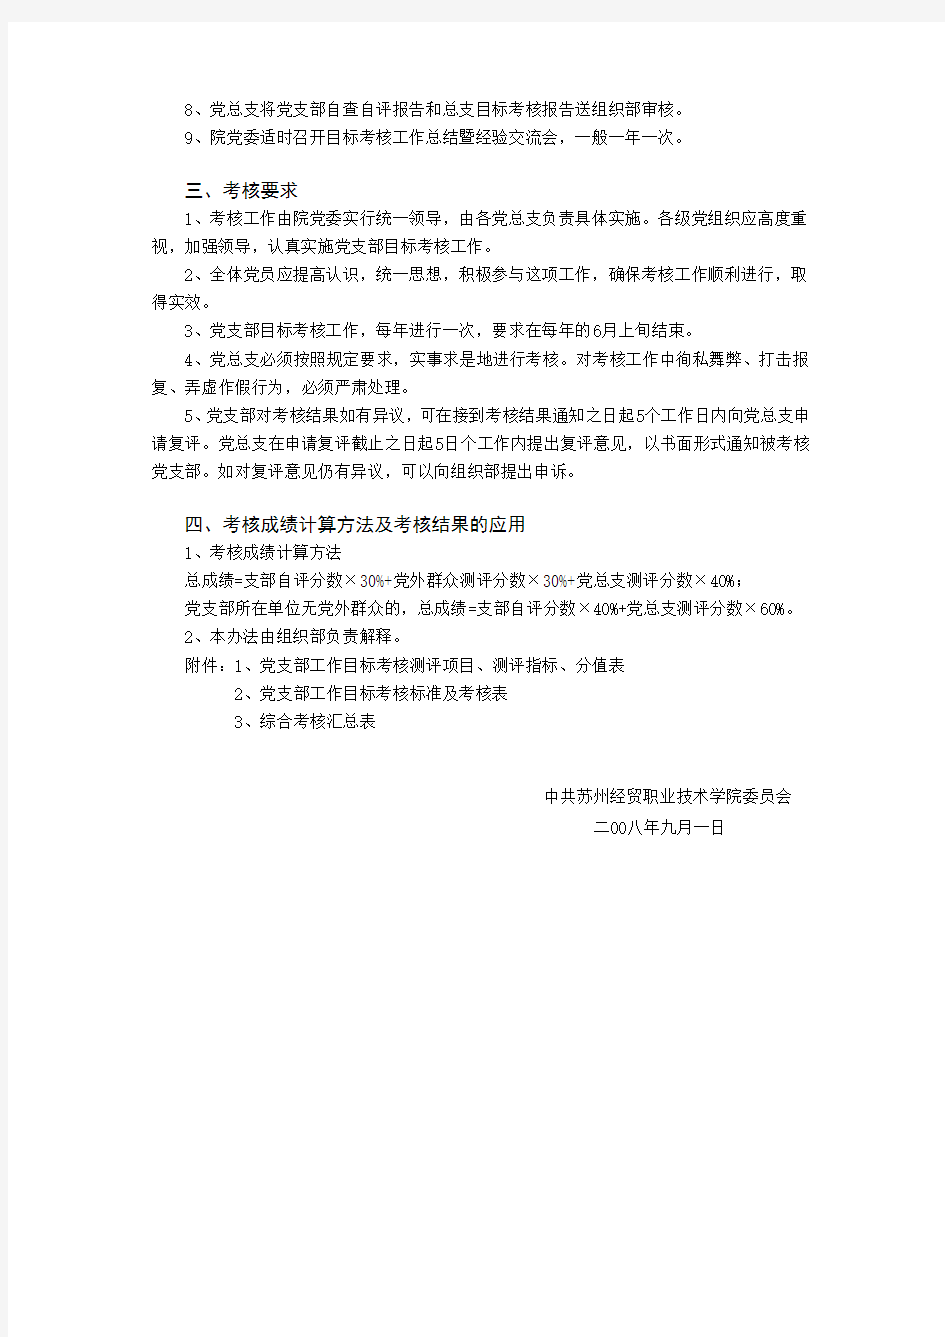 苏州经贸职业技术学院党支部工作目标考核实施意见(试行)